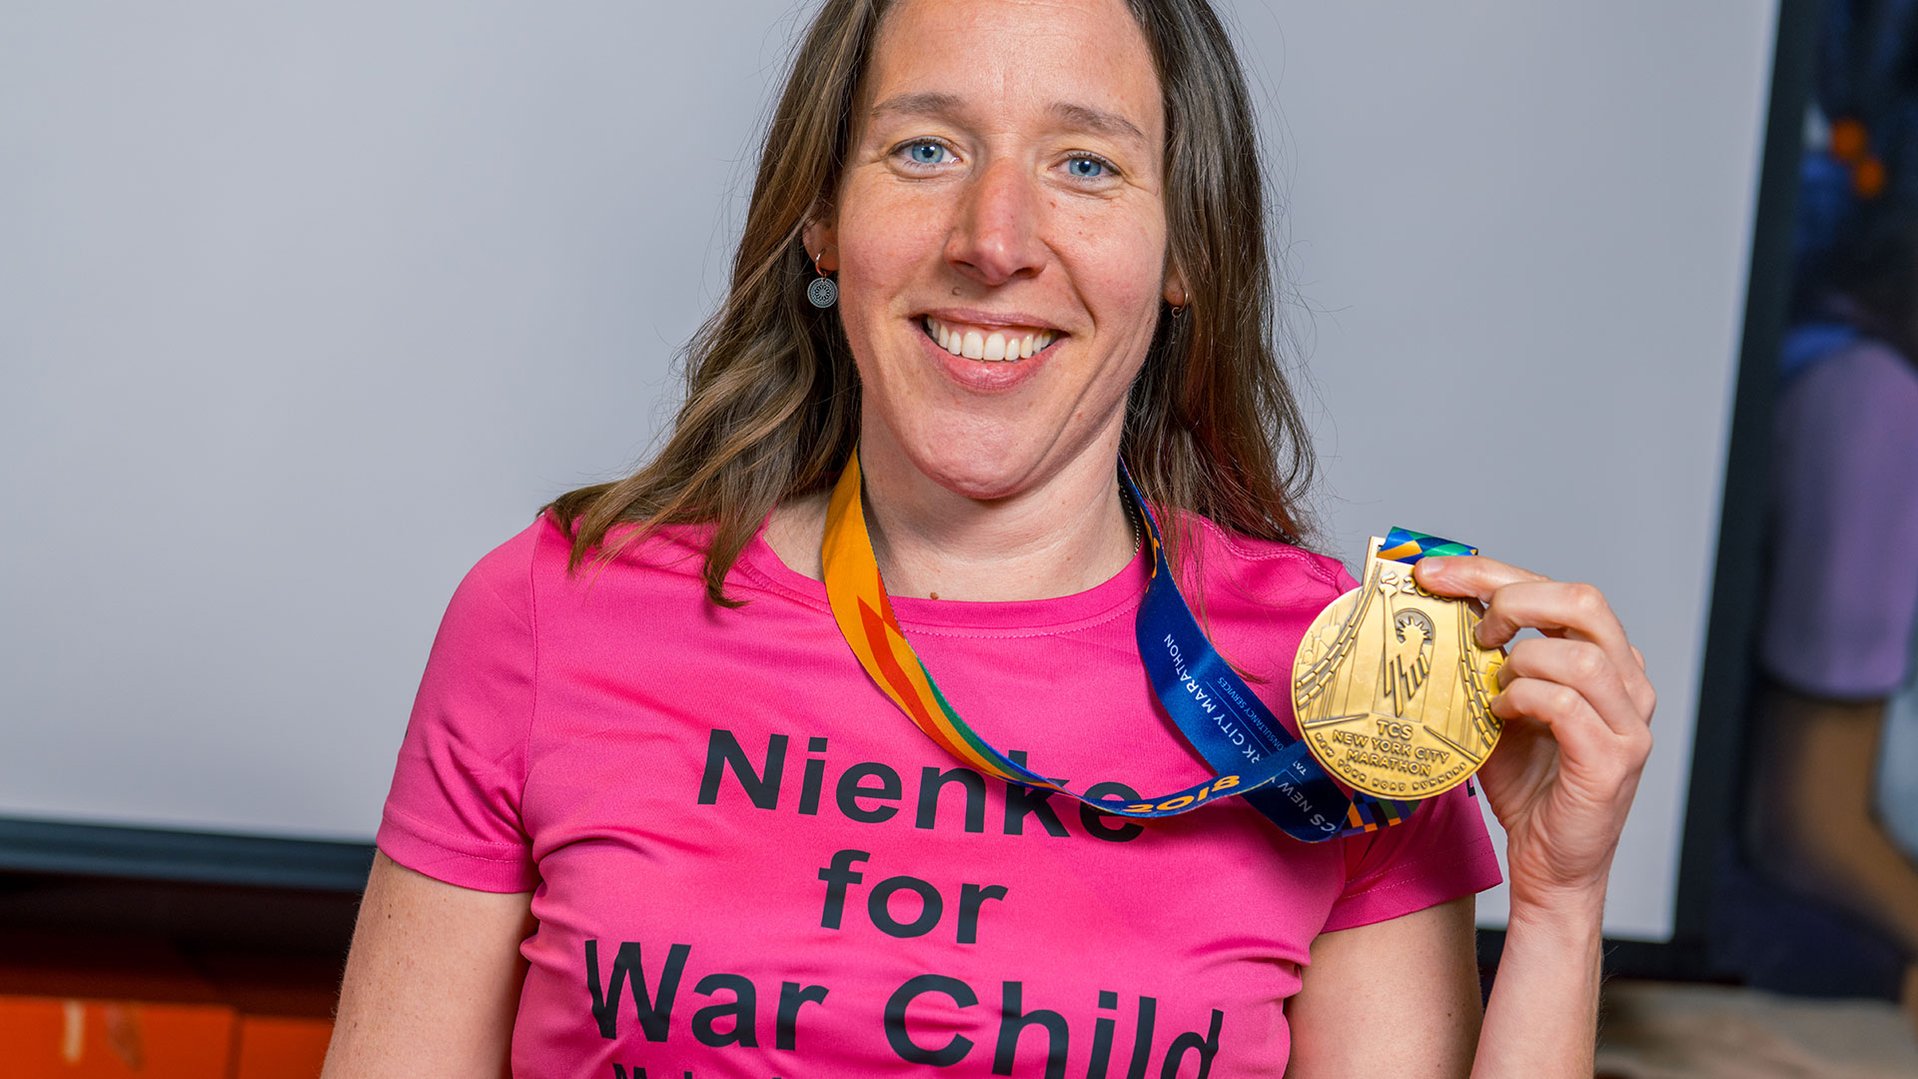 Al jaren is War Child-collega Nienke #GoedBezig met sportieve acties voor kinderen in oorlog